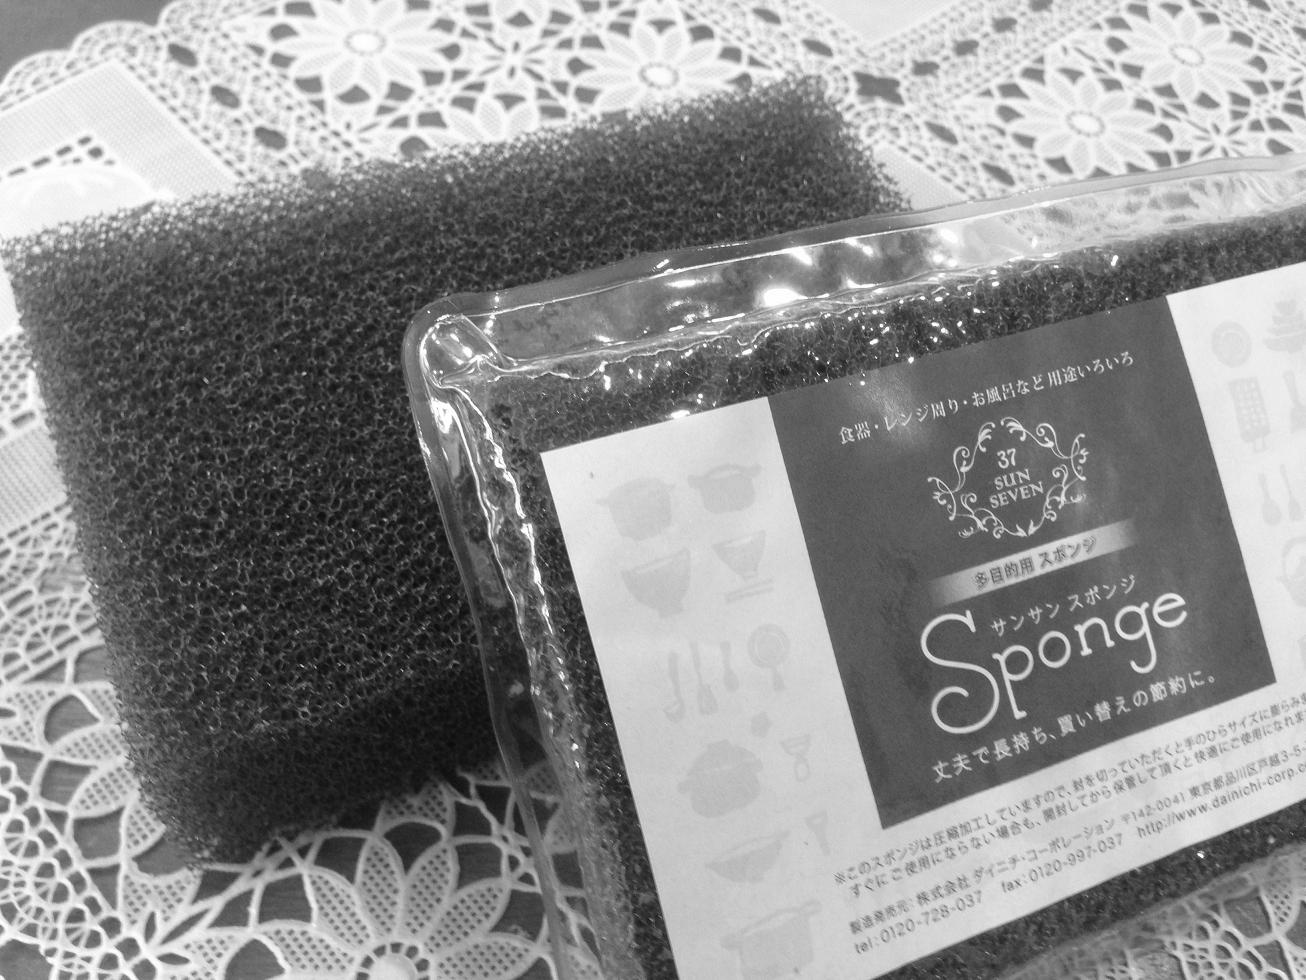 オシャレな黒い食器用スポンジ「サンサンスポンジ」 – MUJIぽいインテリア